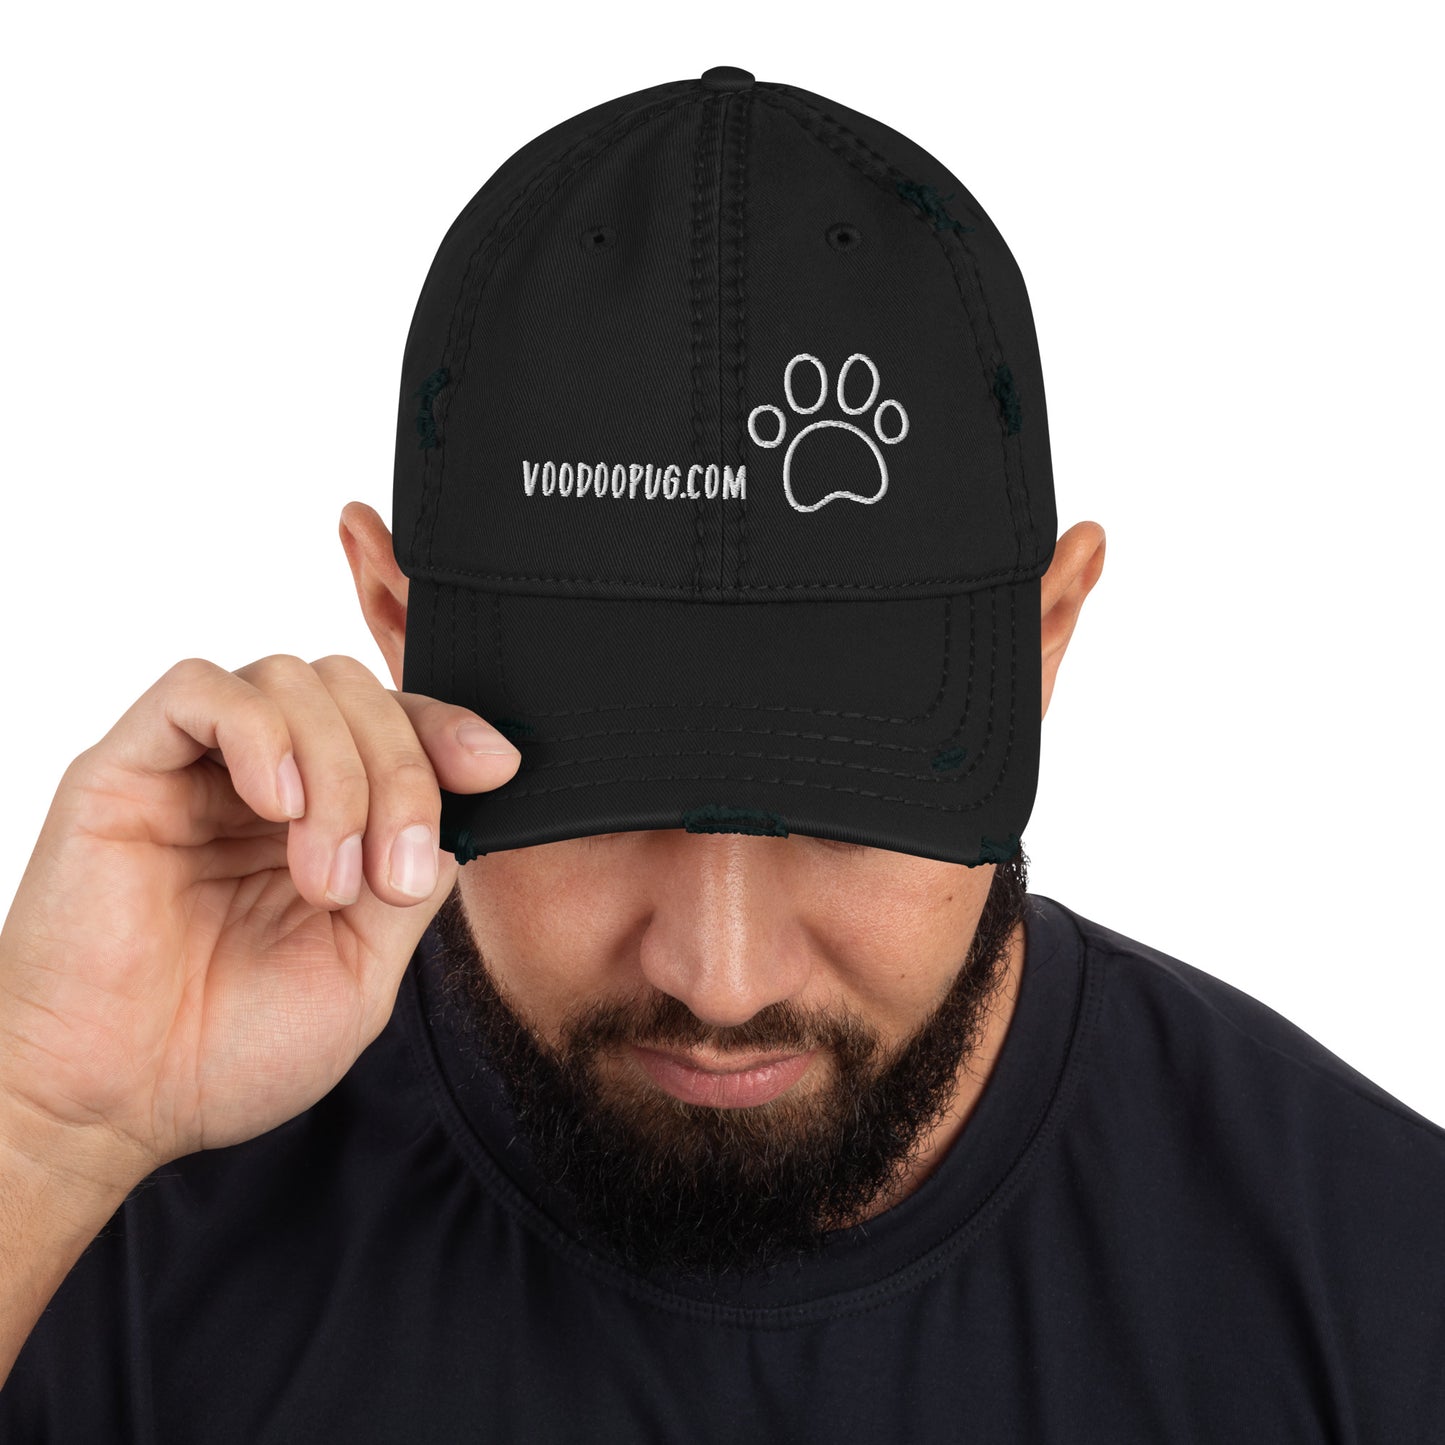 VoodooPug.com Distressed Hat